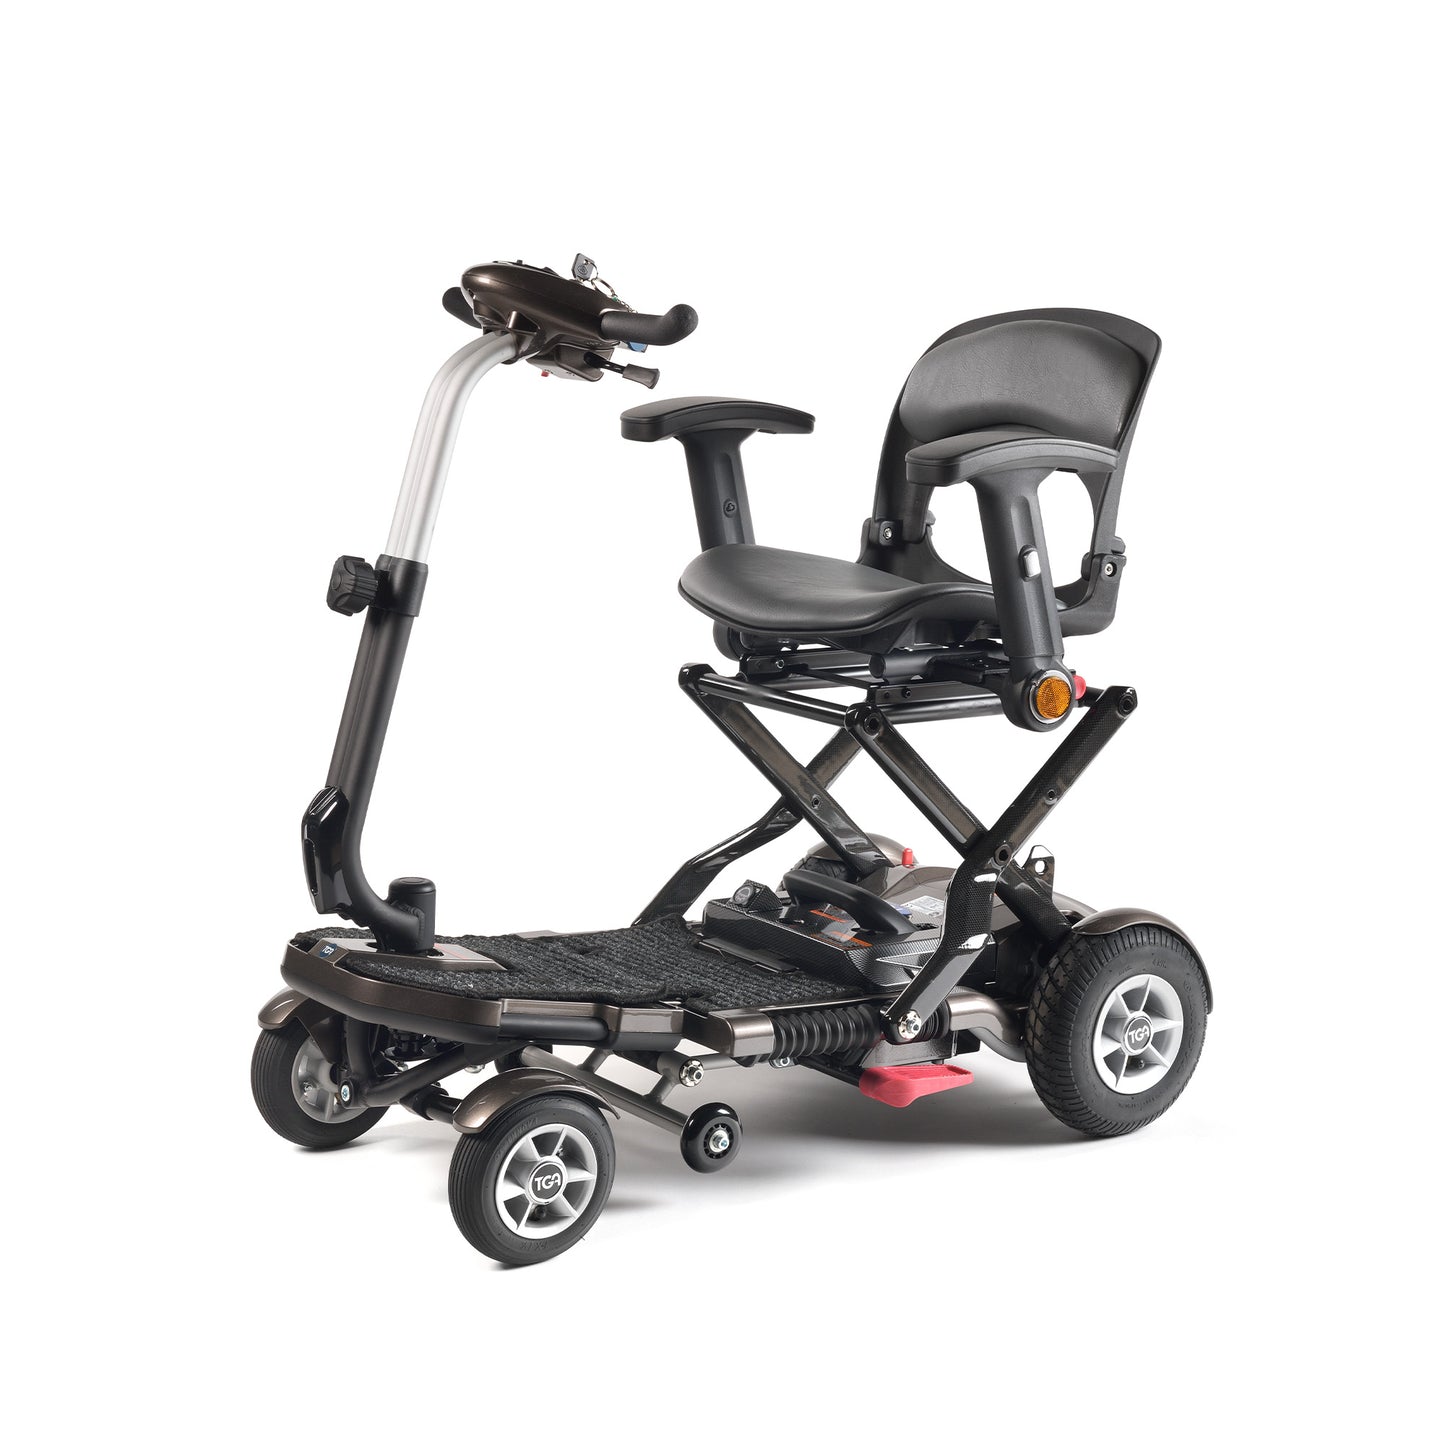 Minimo Plus Electric Mobility Scooter – Warm Bronze Metallic & Polar White Metallic